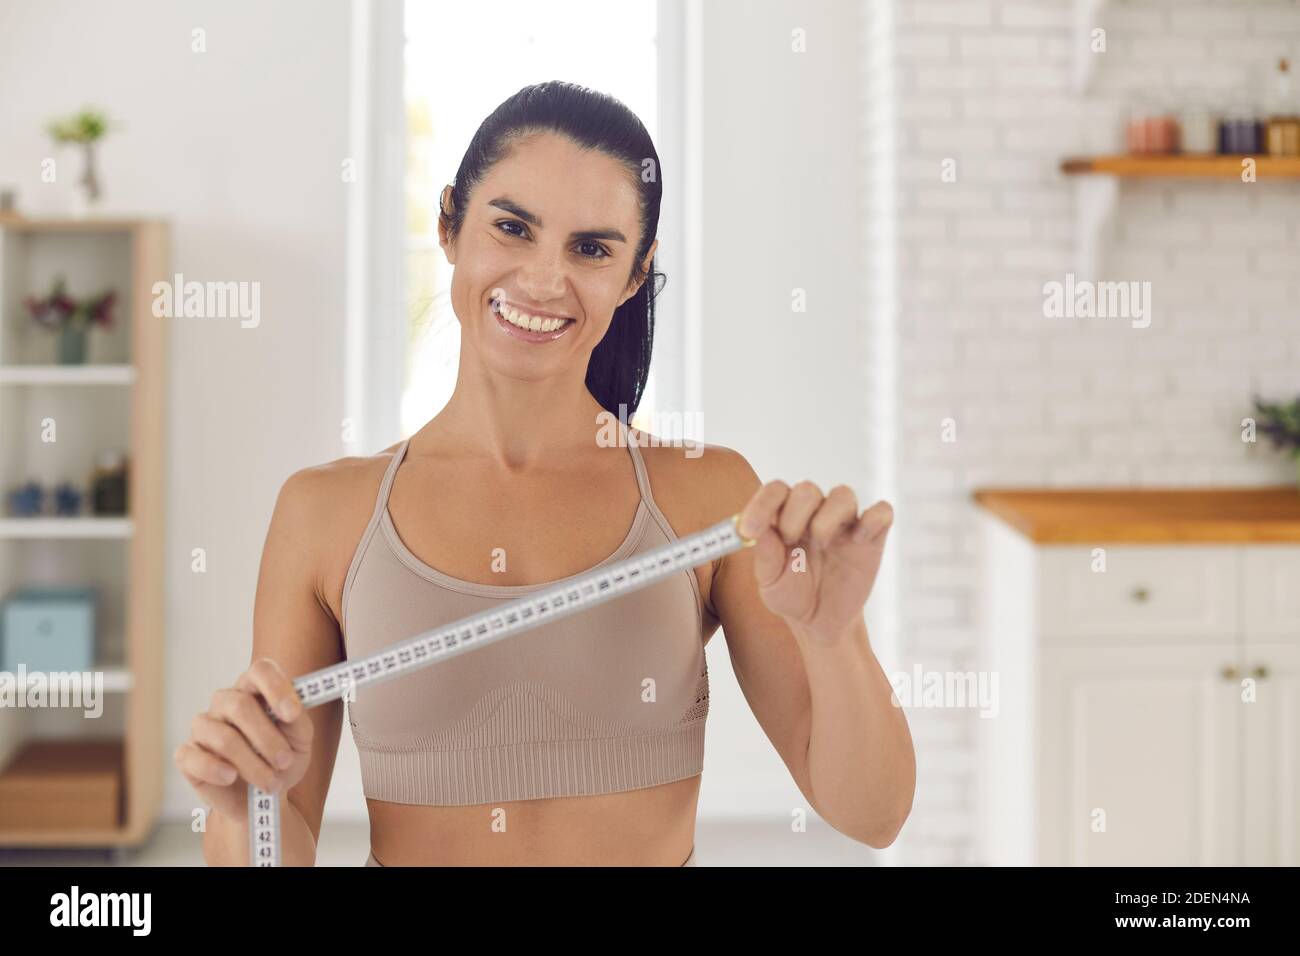 Perdita di peso allenatore che tiene metro a nastro, sorridente e motivante a rendere il vostro corpo perfetto Foto Stock